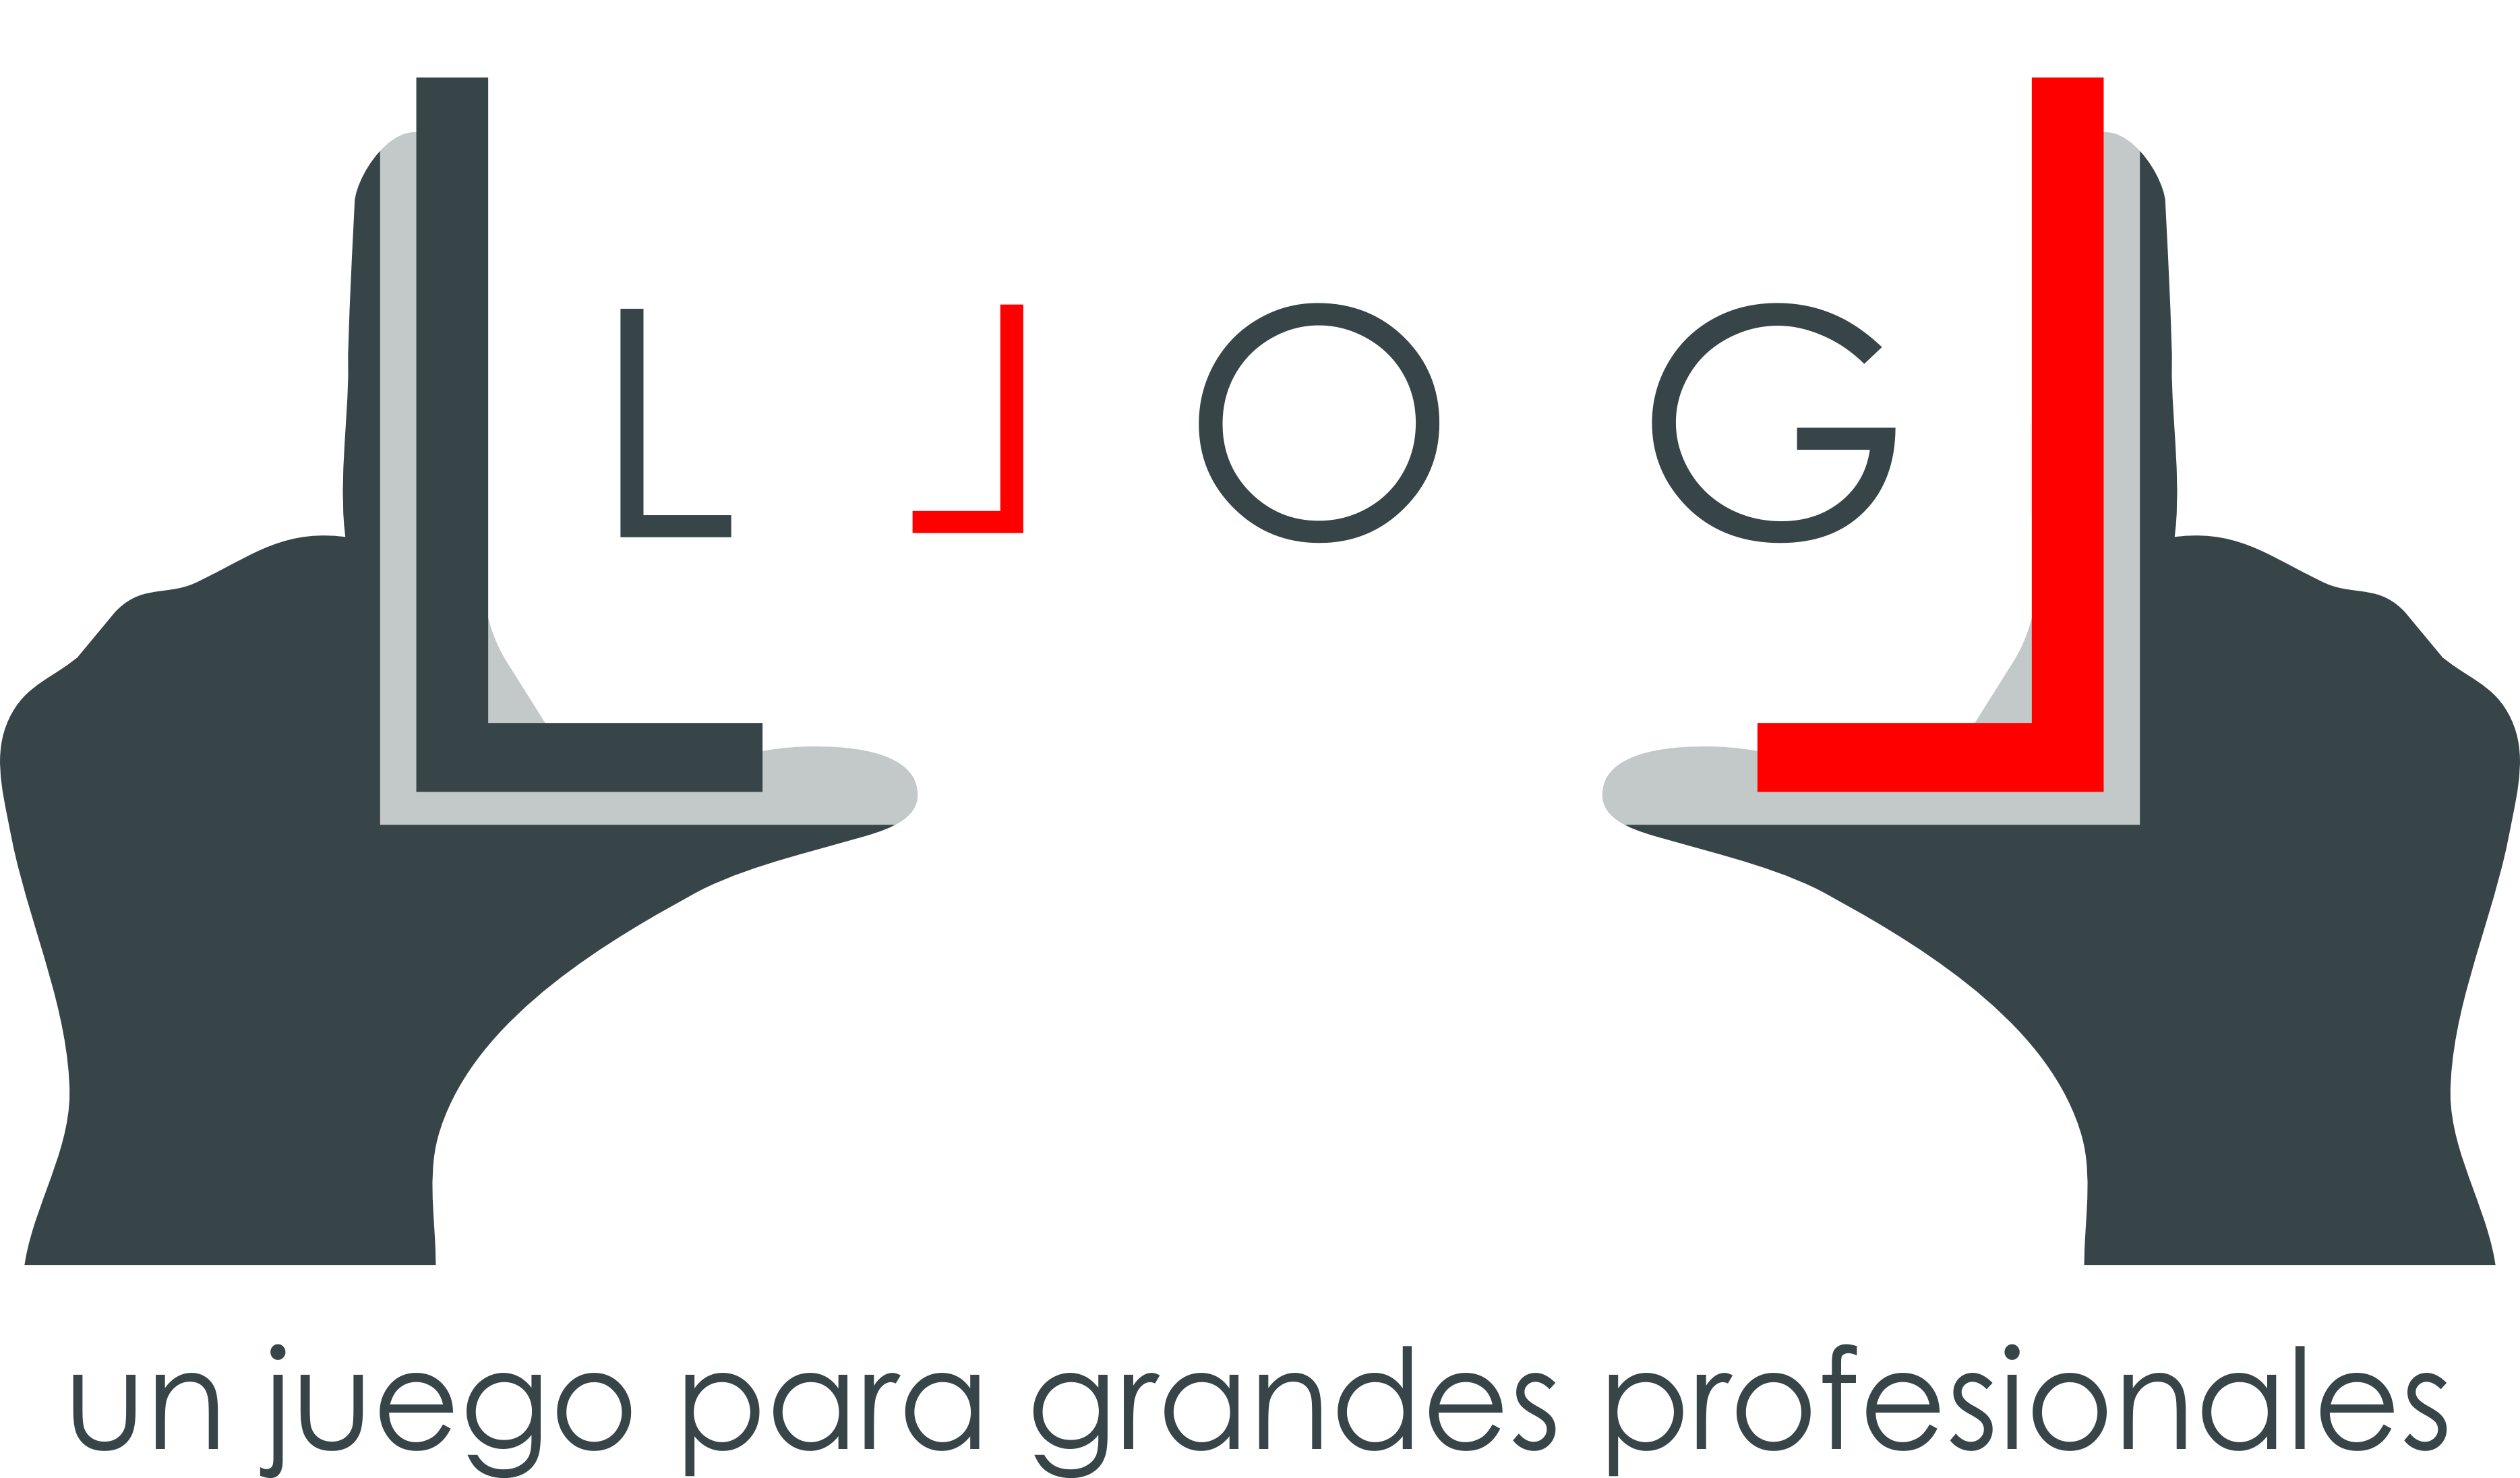 Llog Logo - LLOG vídeo de la experiencia de los alumnos (parte 3)